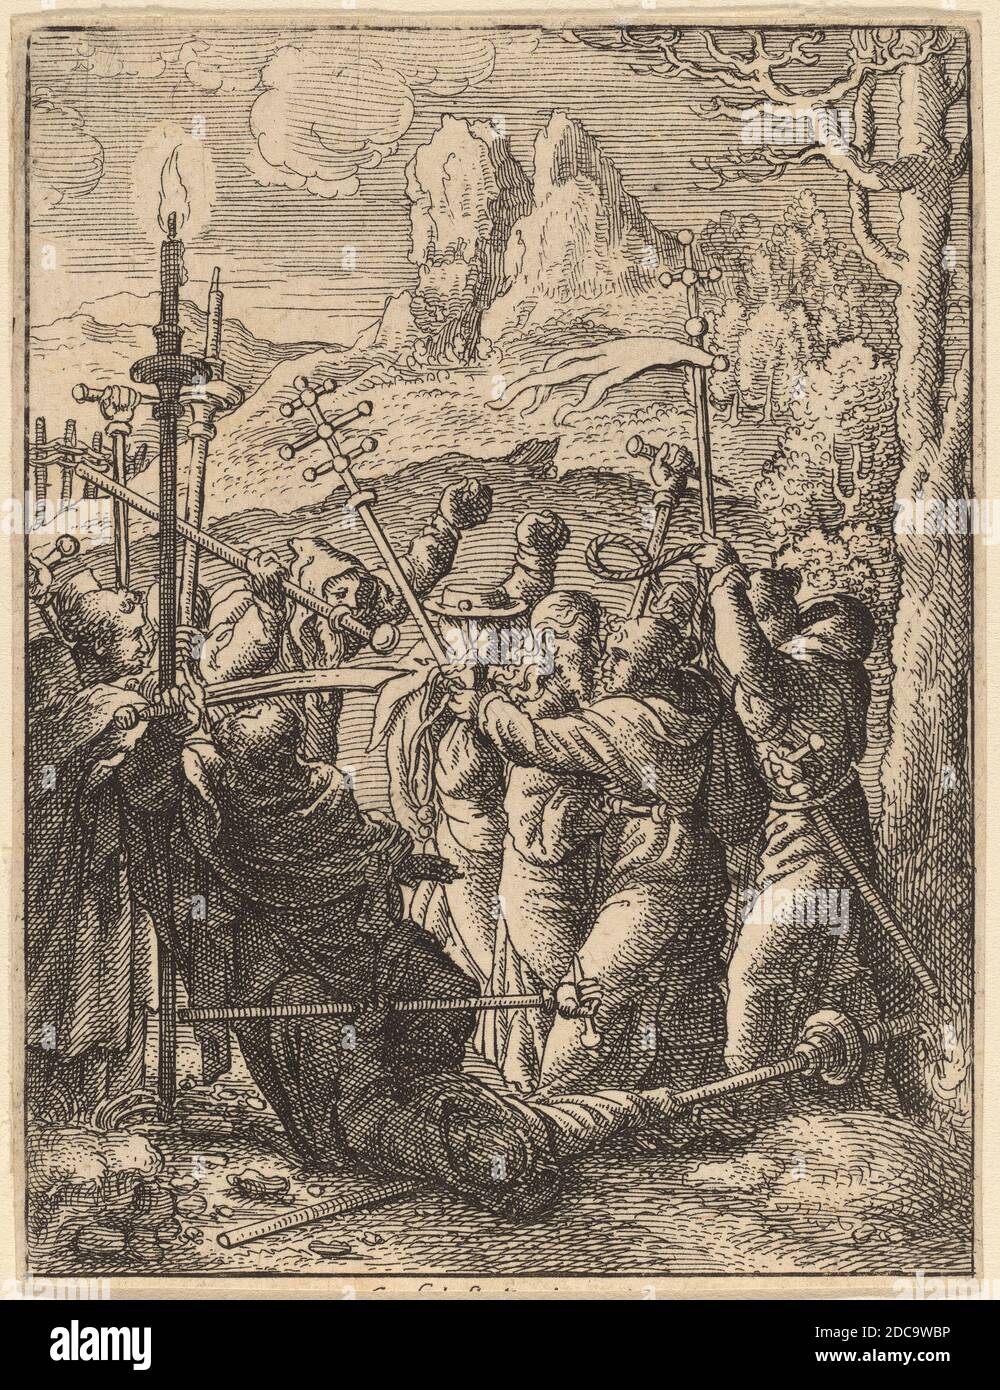 Venceslaus Hollar, (artiste), Bohême, 1607 - 1677, Jésus pris, la passion satirique, (série), gravure Banque D'Images